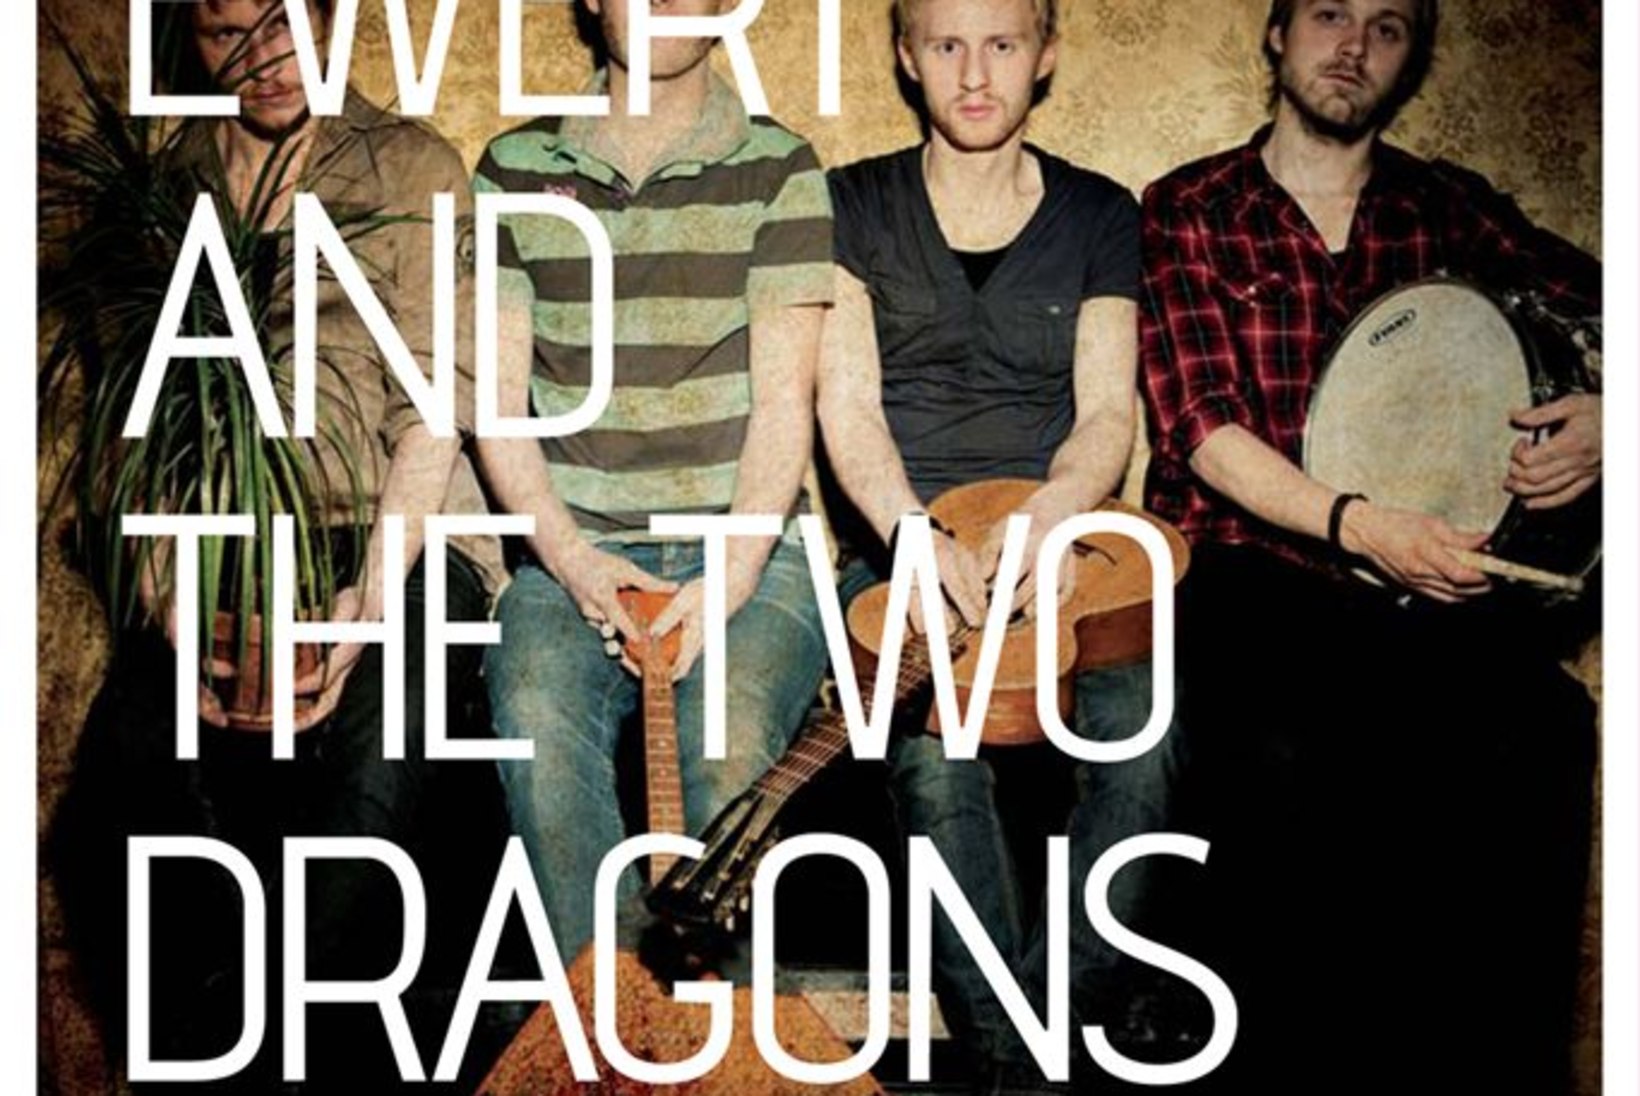 Ewert and The Two Dragons avaldas teise albumi